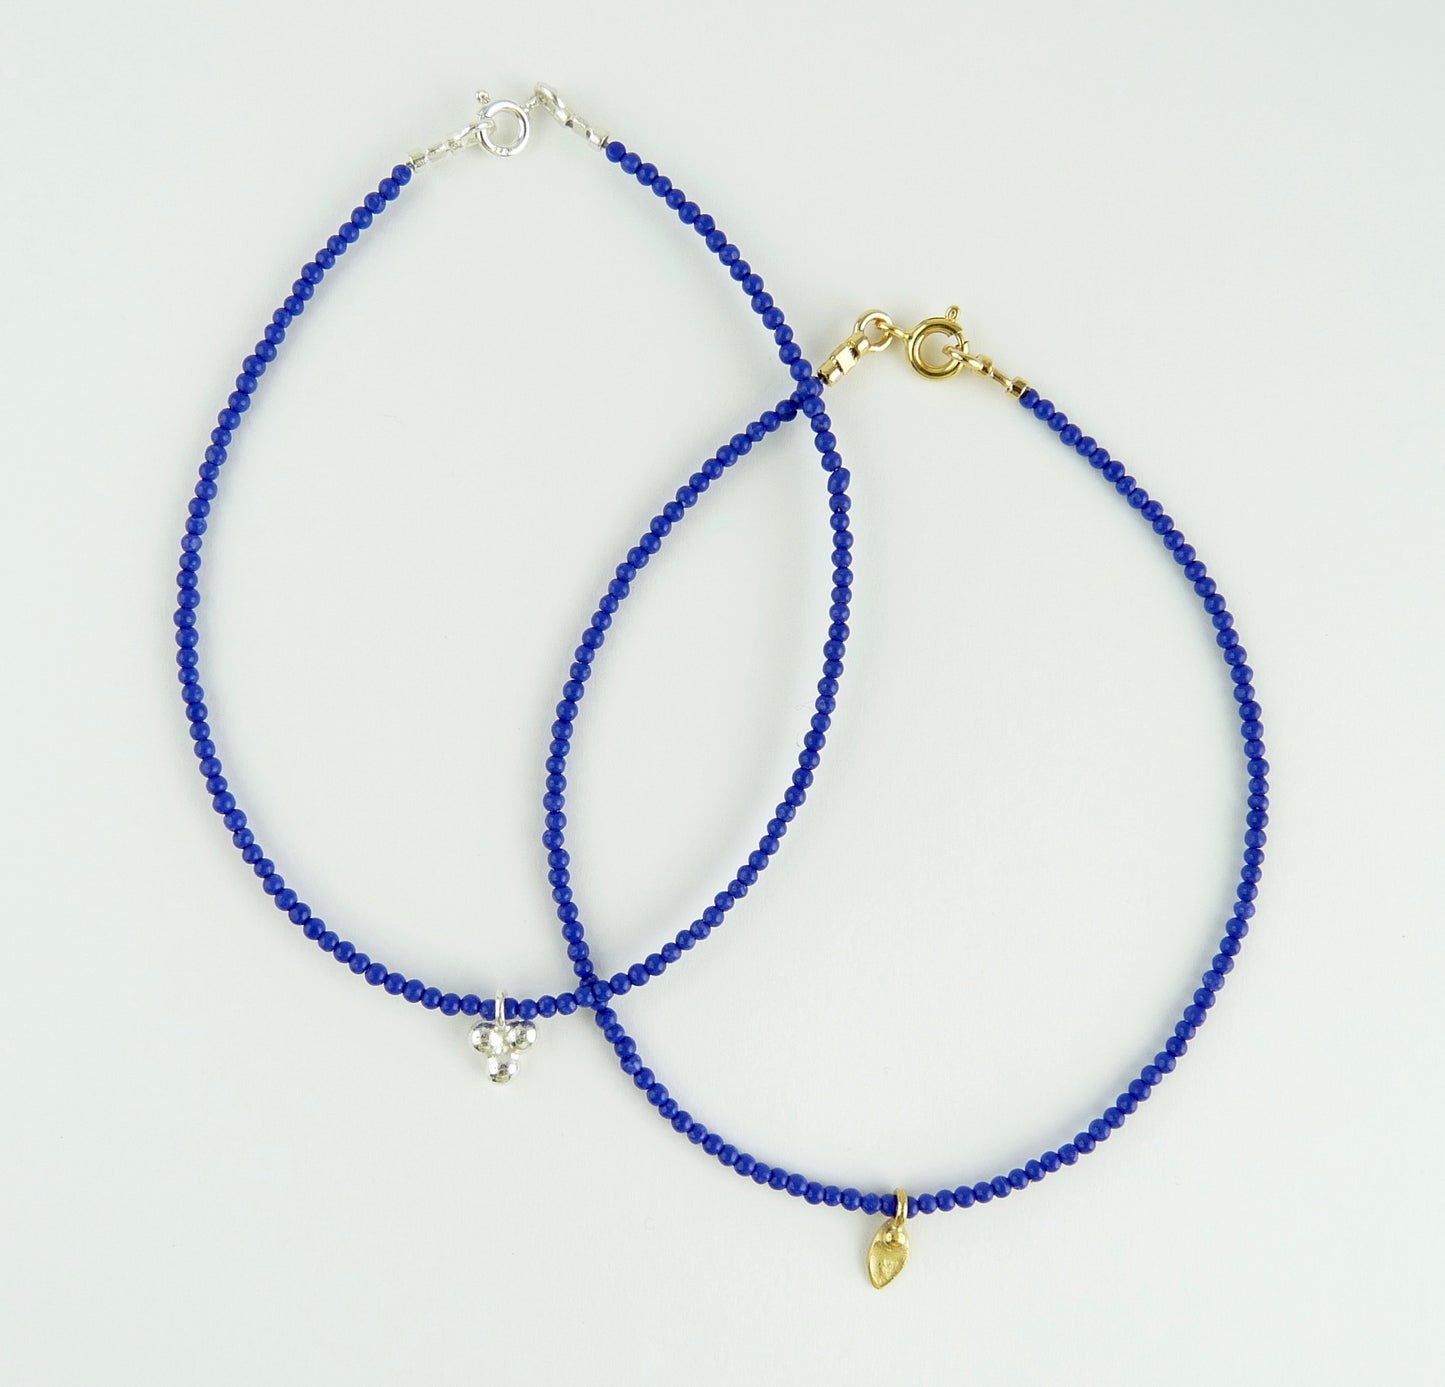 Men's Lapis Lazuli Crystal Healing Bracelet